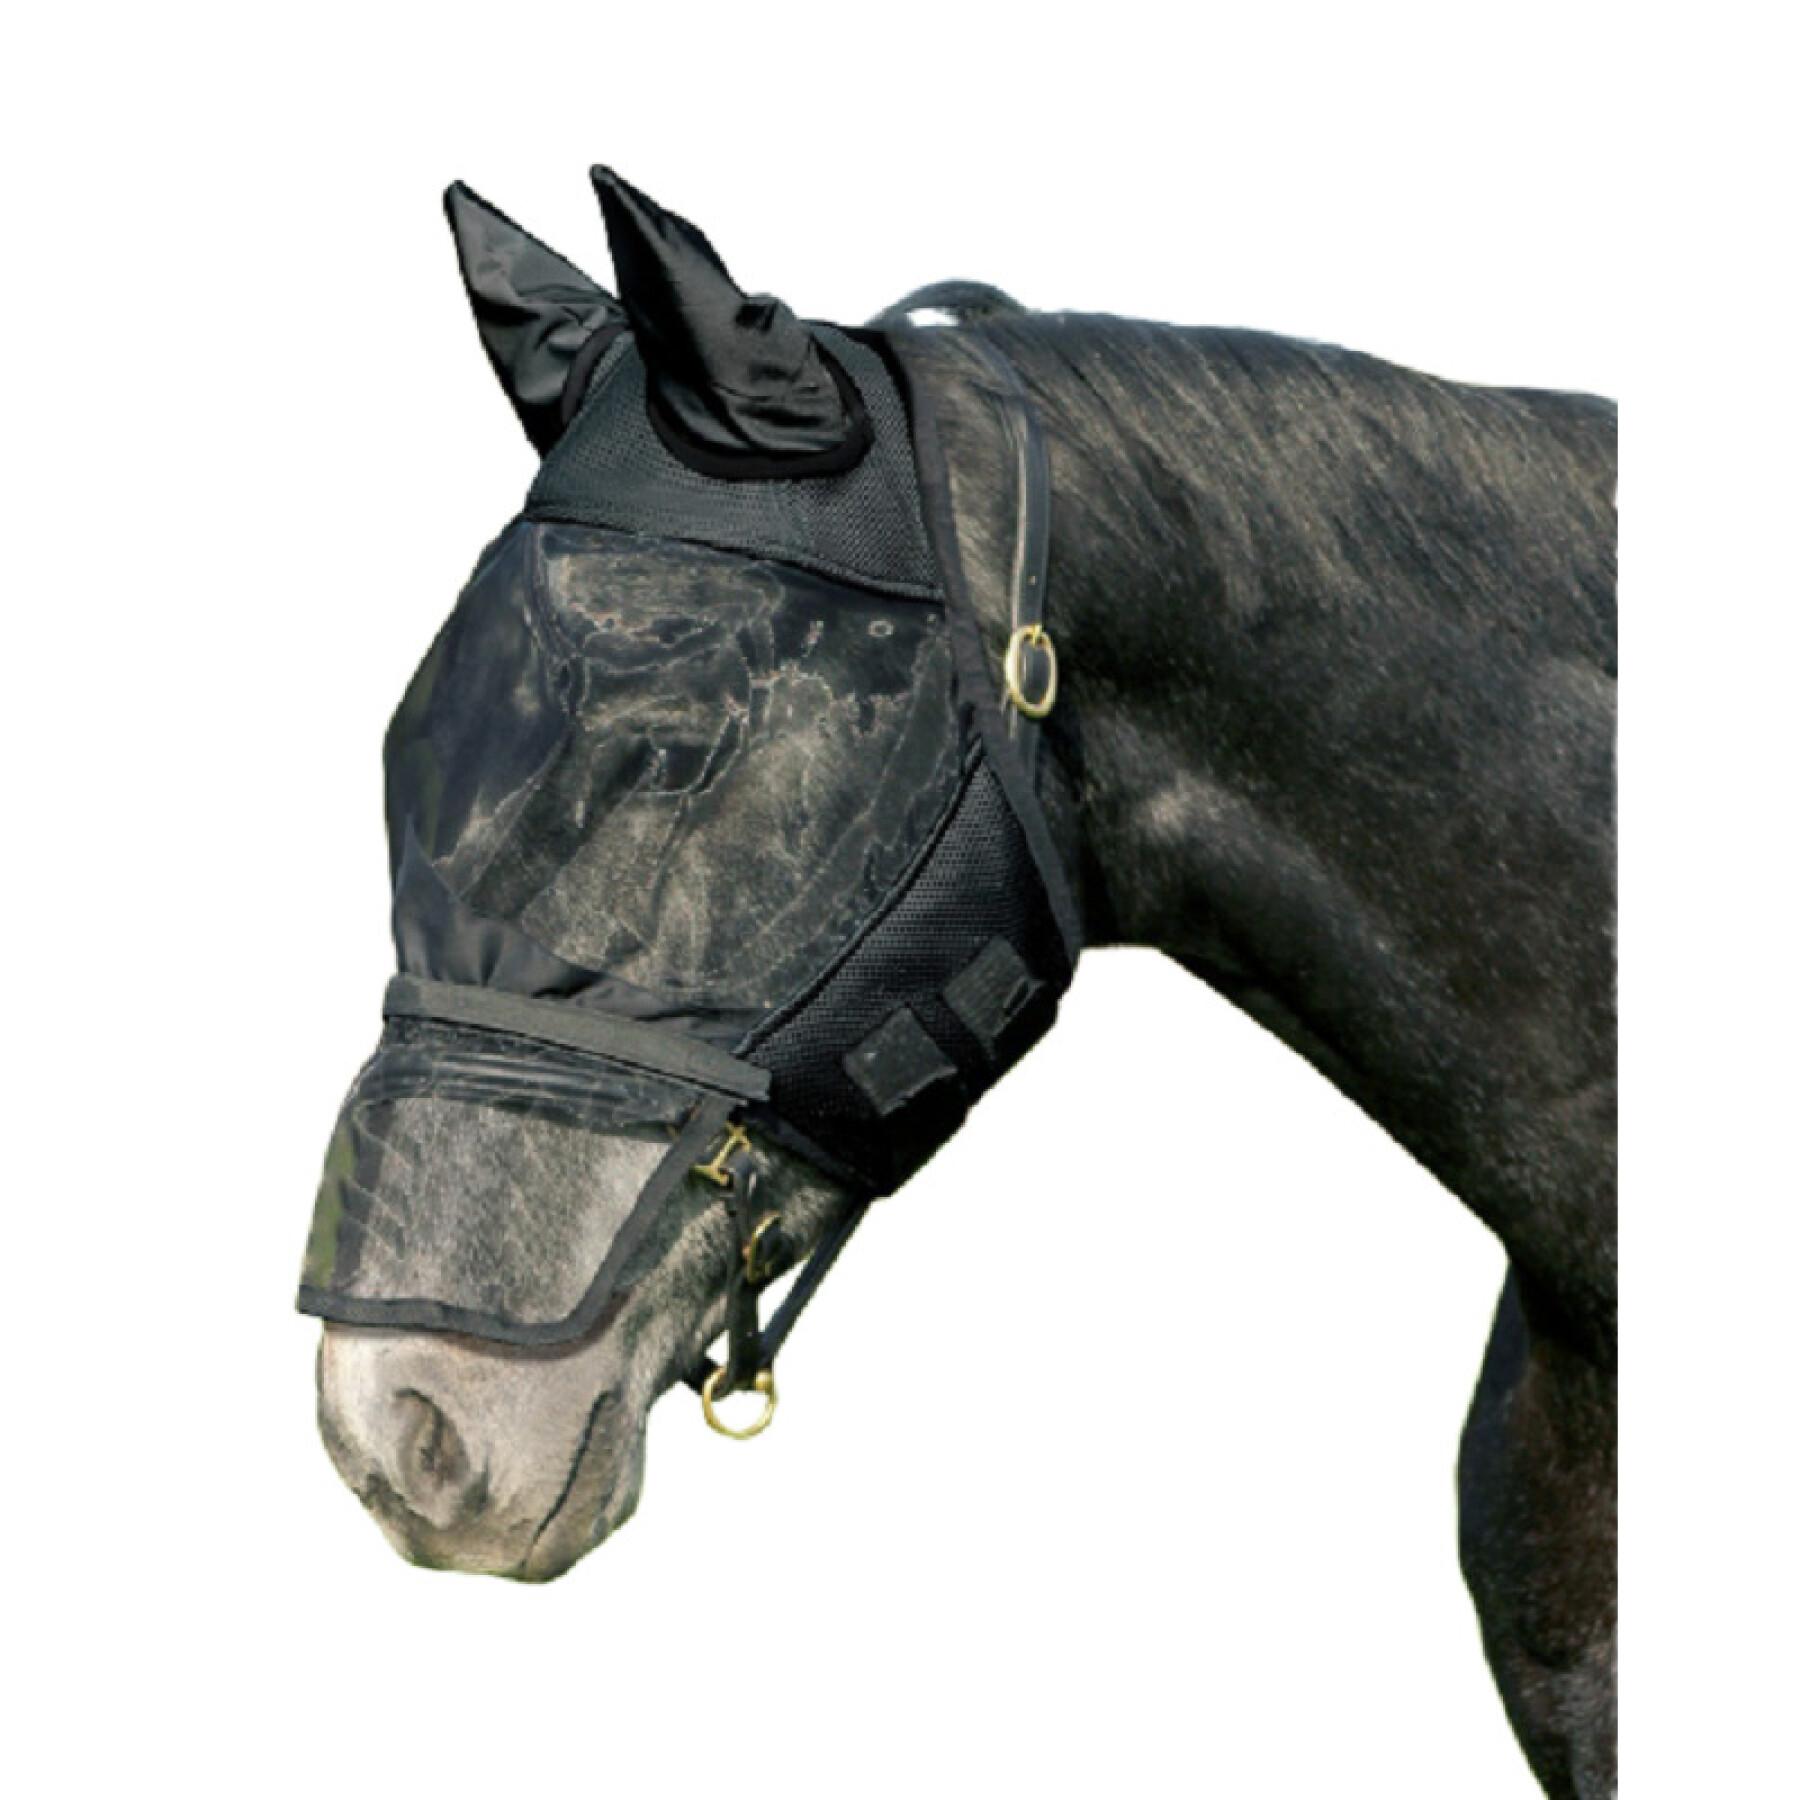 Masque anti-mouches pour cheval QHP